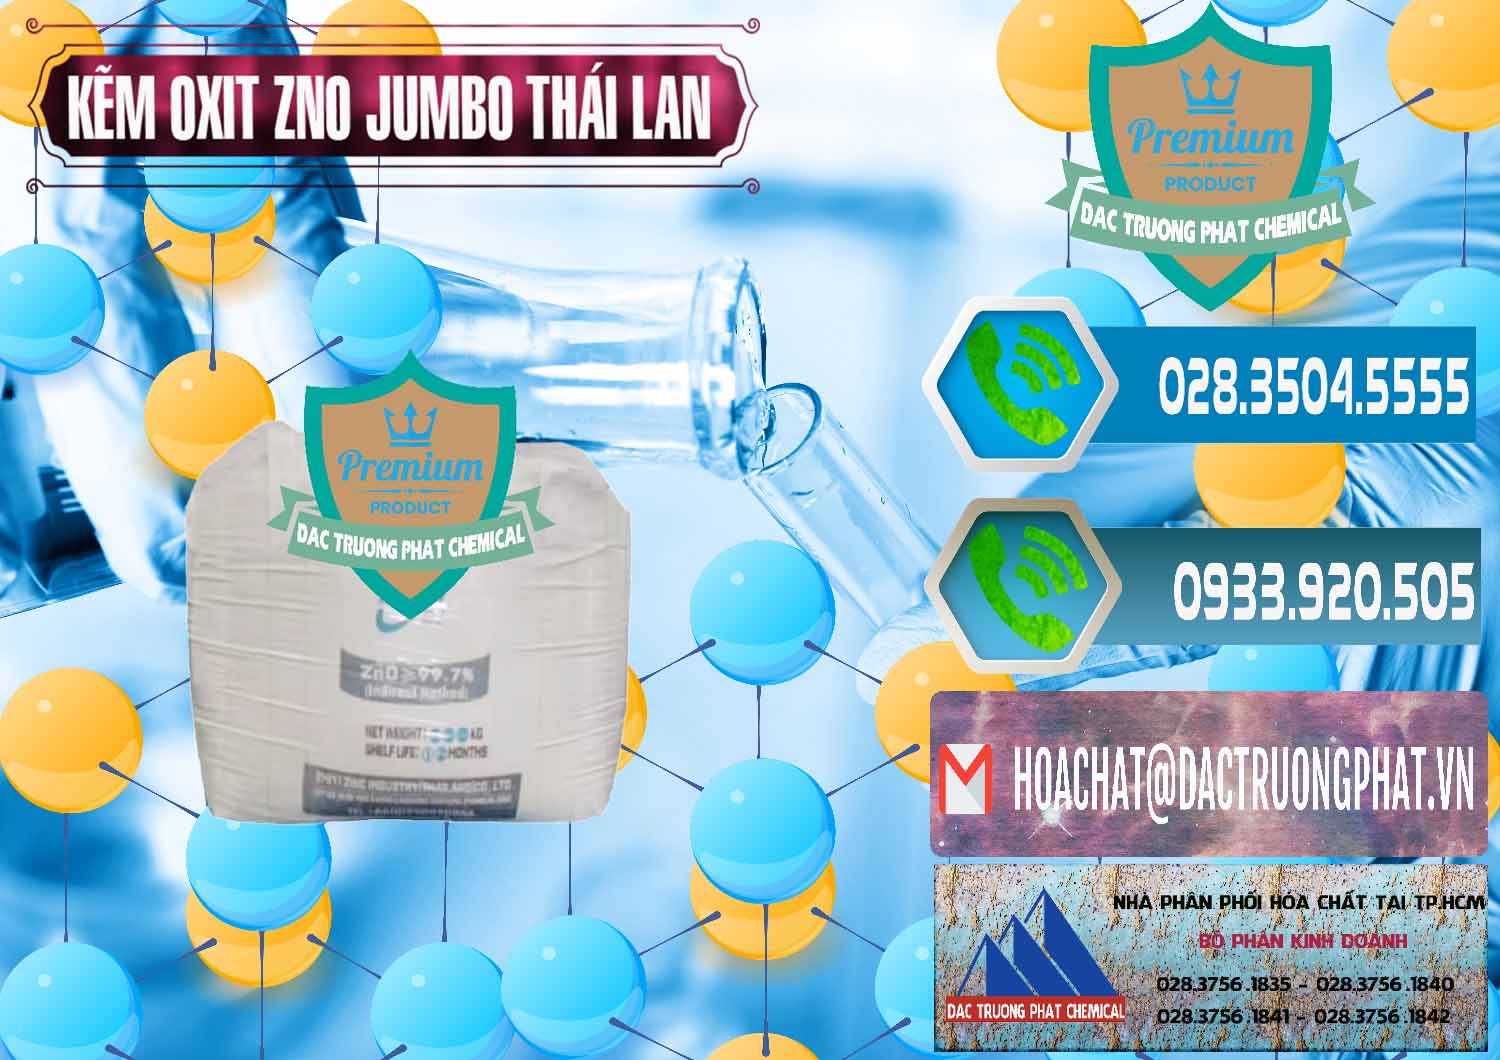 Chuyên bán & cung ứng Zinc Oxide - Bột Kẽm Oxit ZNO Jumbo Bành Thái Lan Thailand - 0370 - Đơn vị cung ứng ( phân phối ) hóa chất tại TP.HCM - congtyhoachat.net